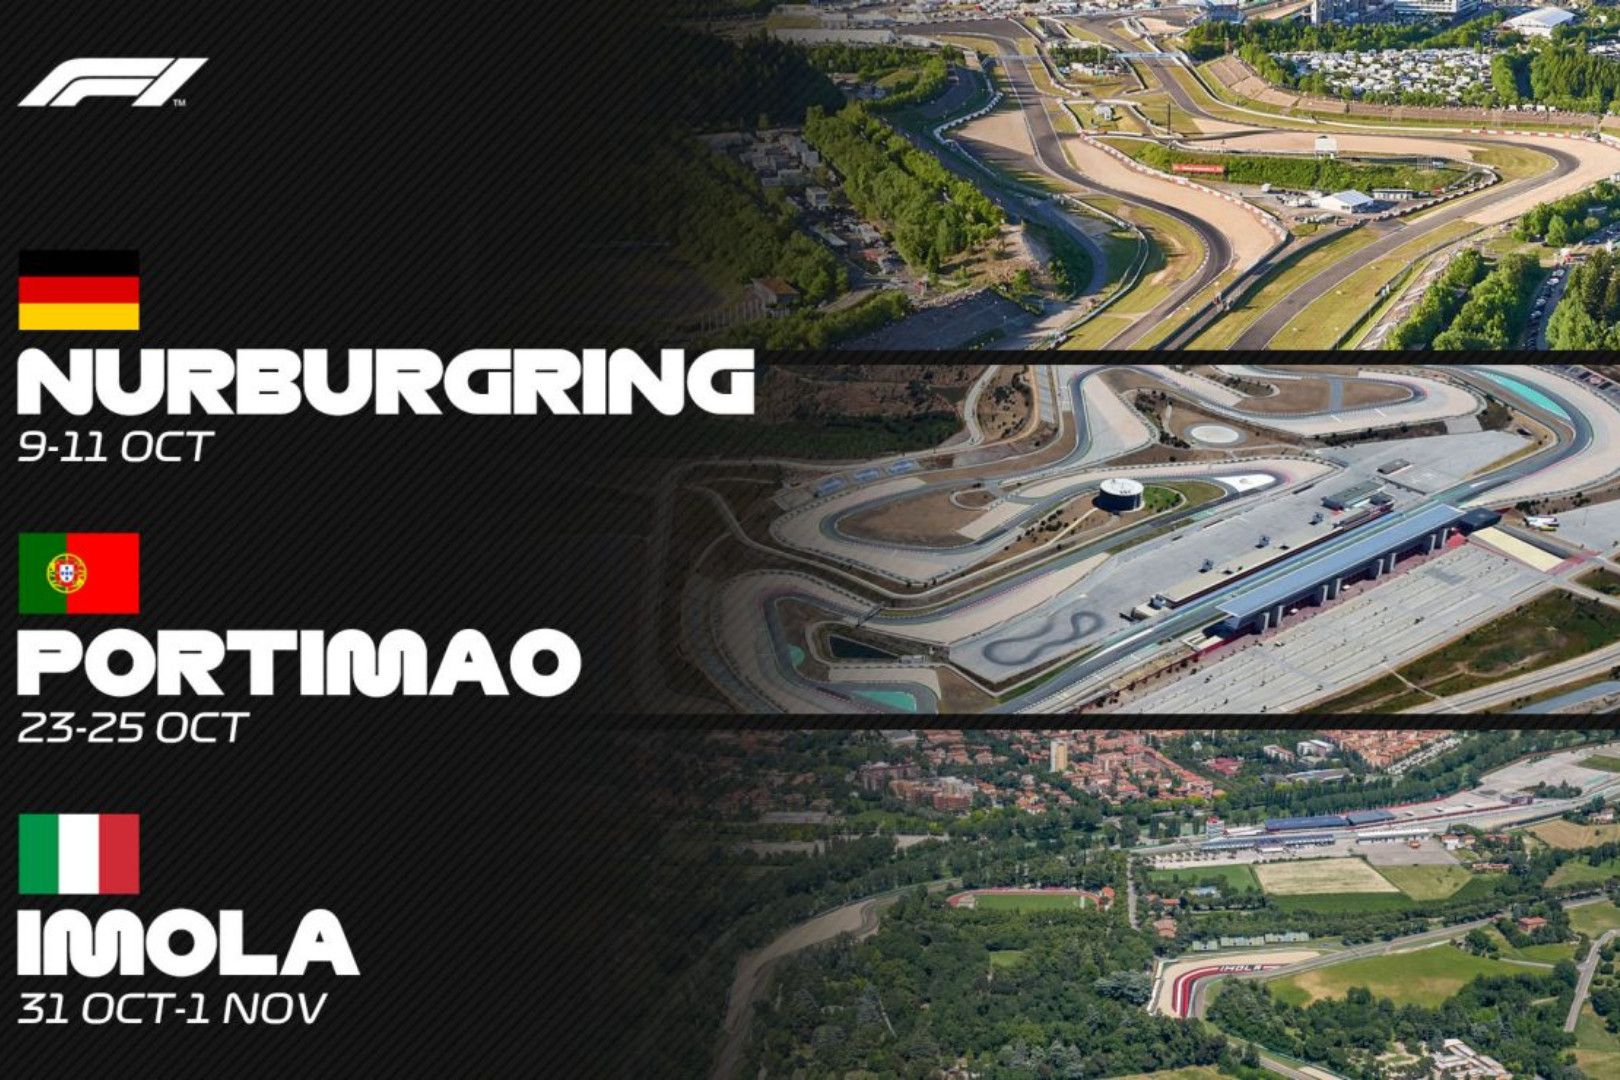 La Fórmula 1 confirma las carreras en Nürburgring, Portimao e Imola